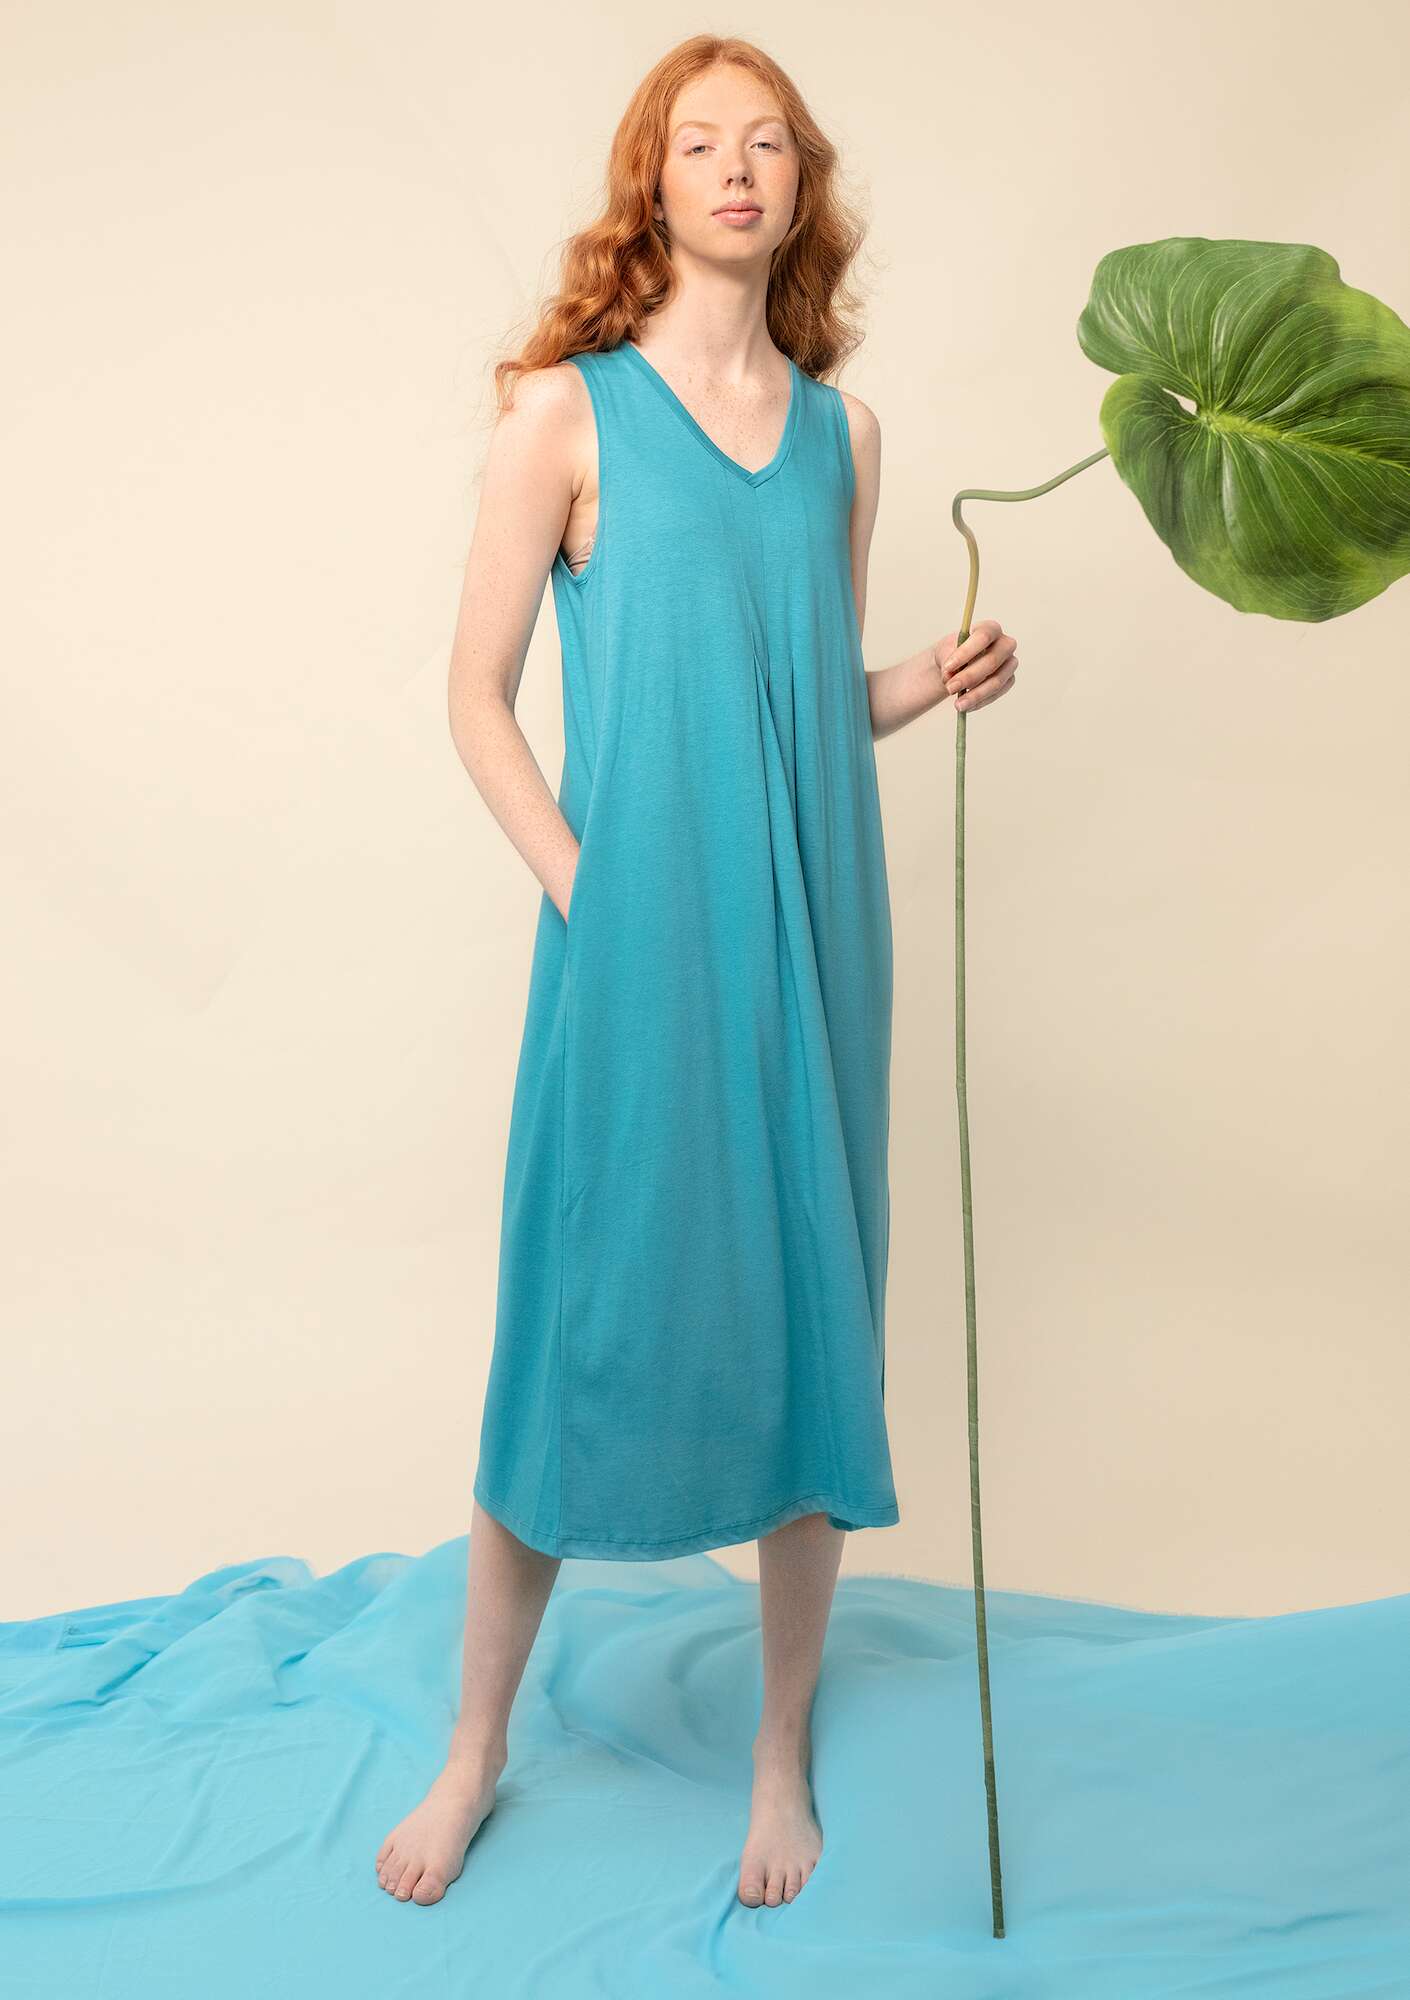 Einfarbiges Kleid turquoise